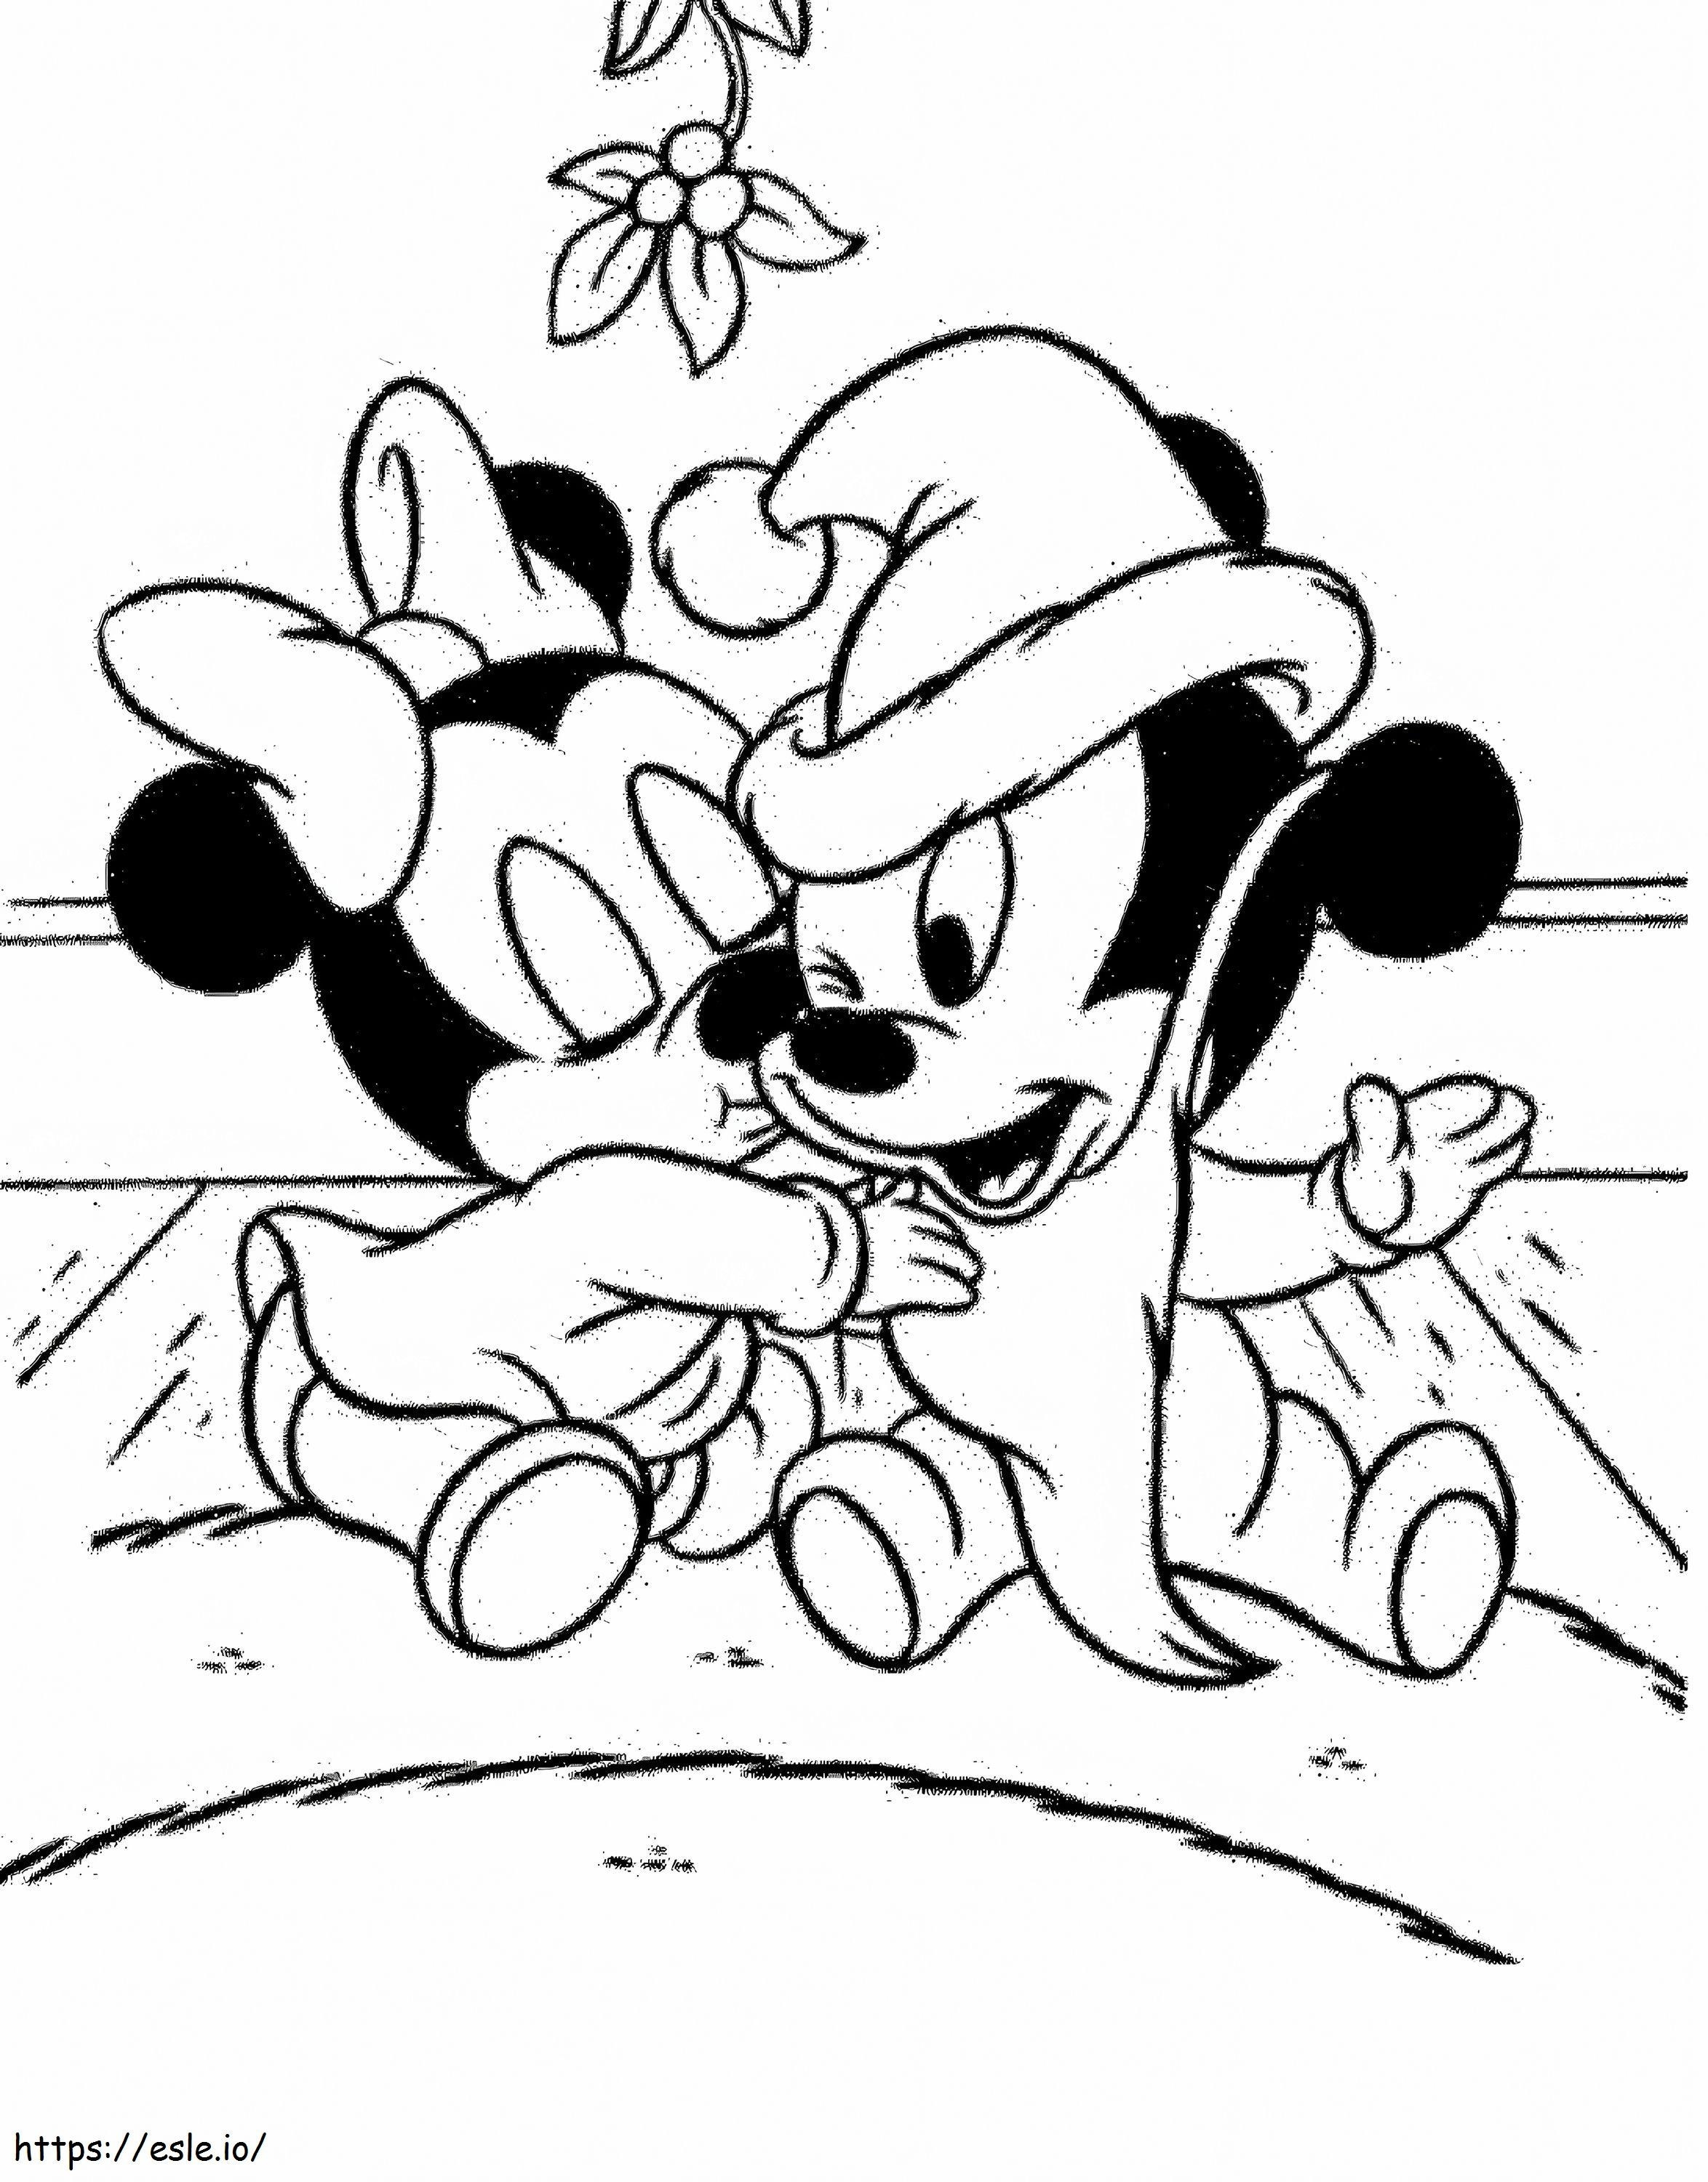 Bebé Minnie Besando A Mickey Mouse para colorear